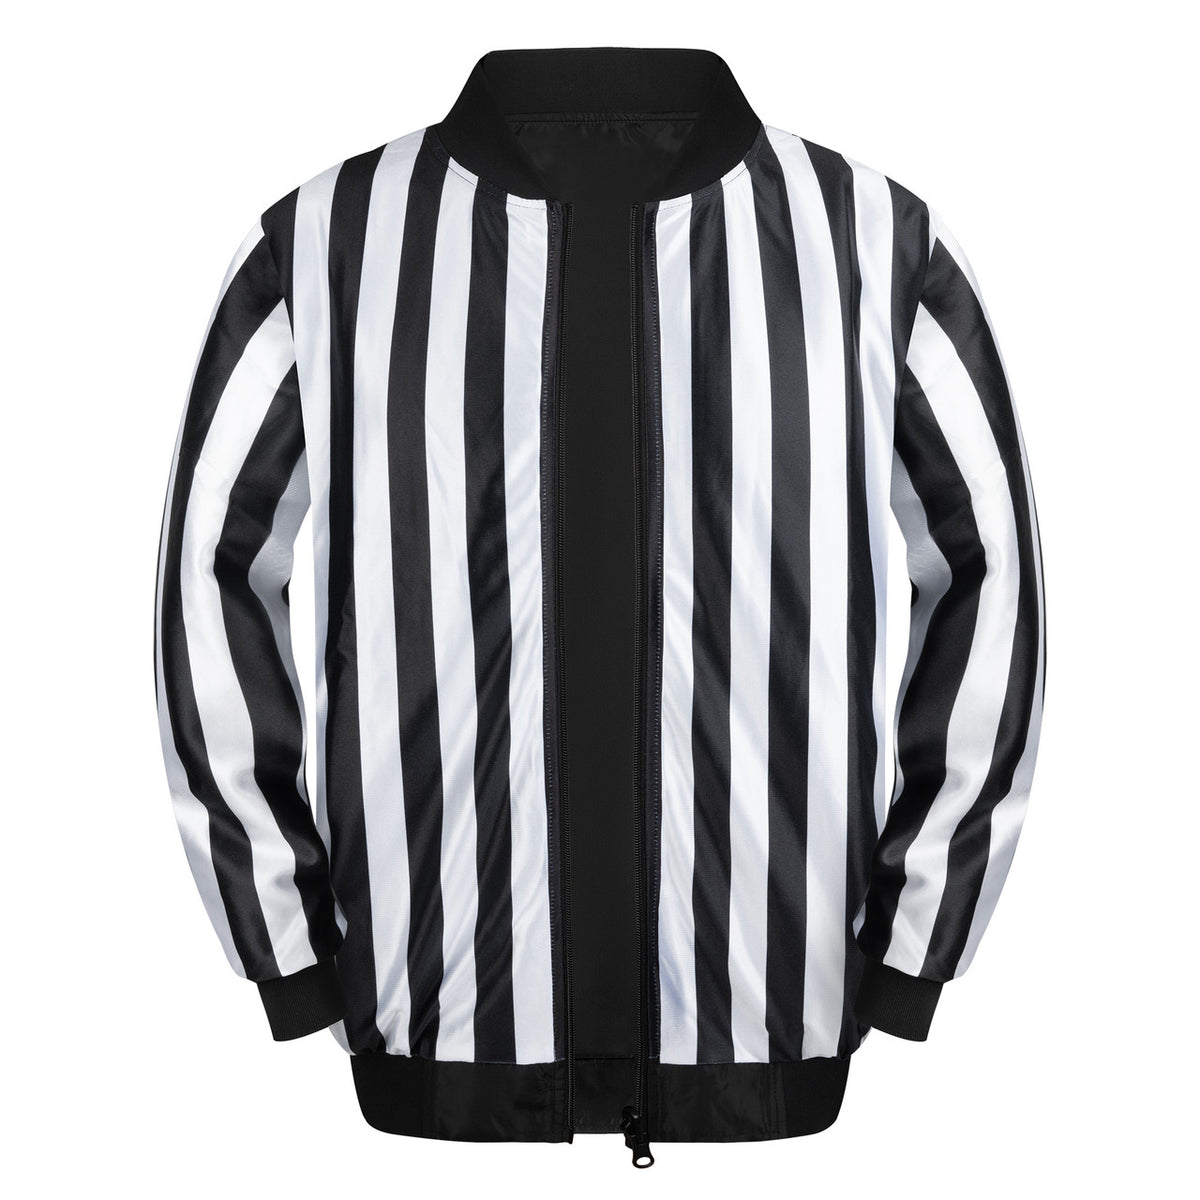 Great Call Leichtathletik | Wendbare 1-Zoll-Lacrosse- und Football-Jacke mit durchgehendem Reißverschluss